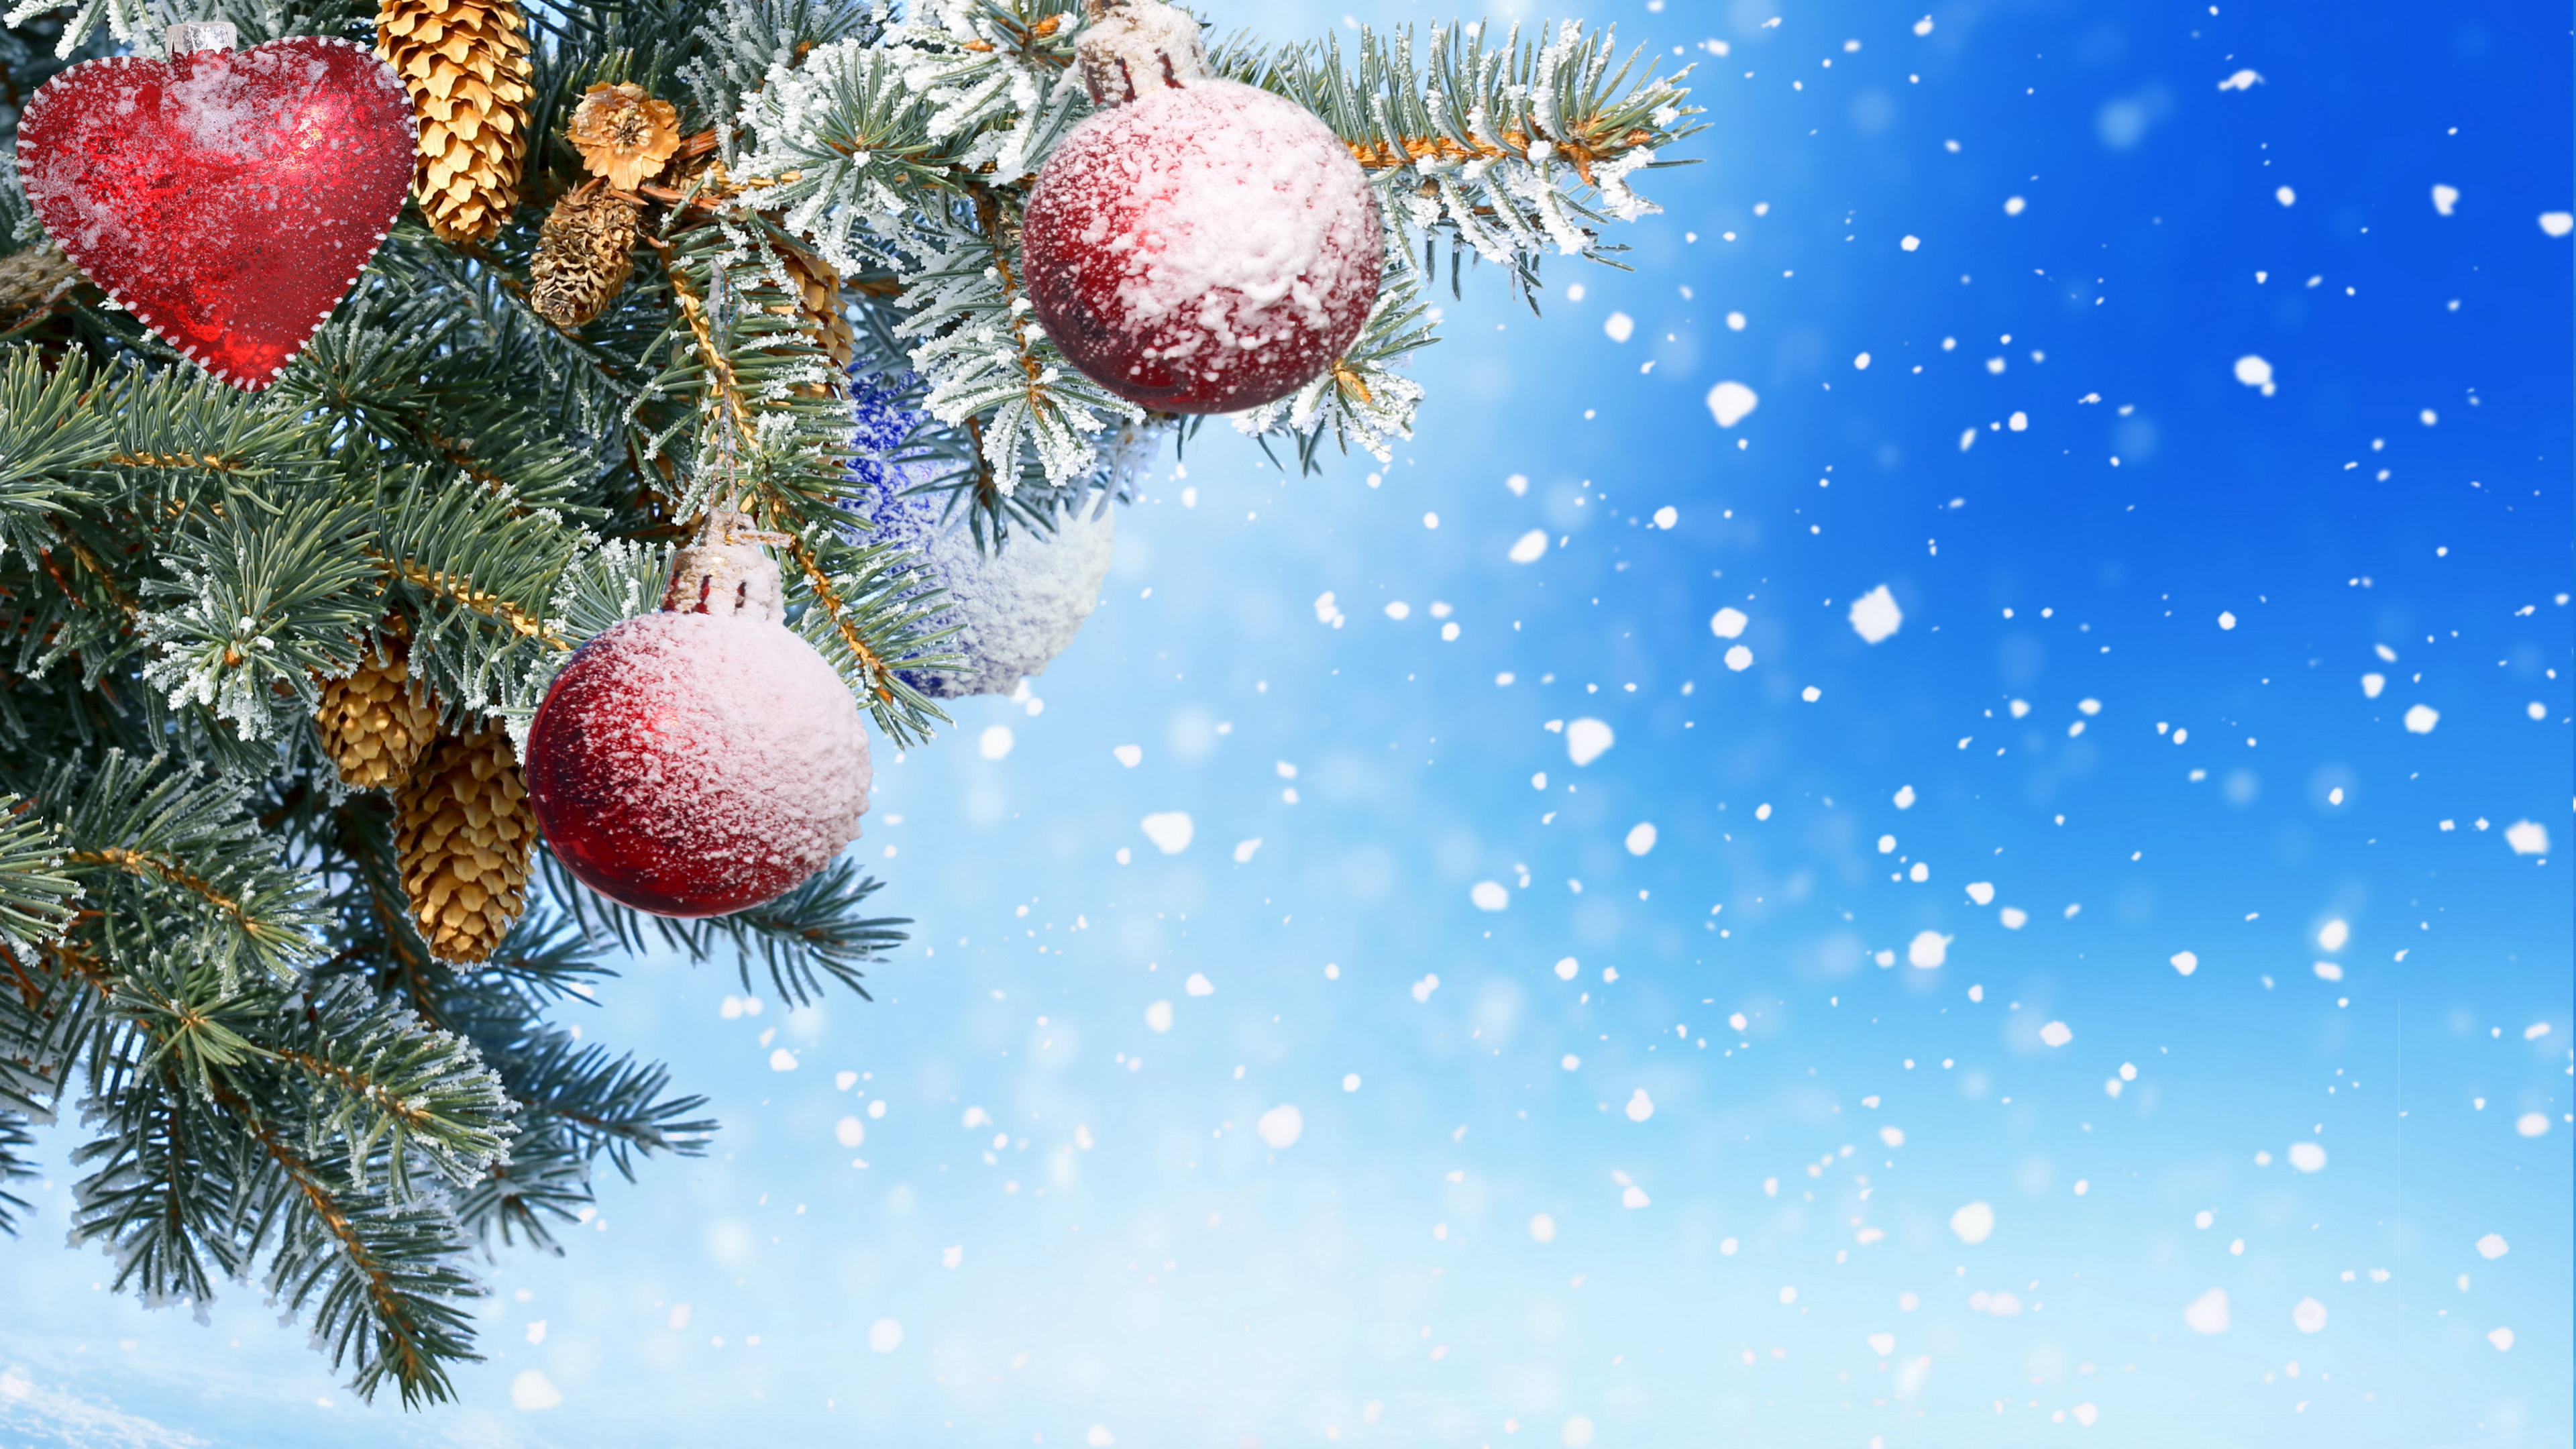 Neujahr, Weihnachten, Christmas Ornament, Baum, Fir. Wallpaper in 3840x2160 Resolution